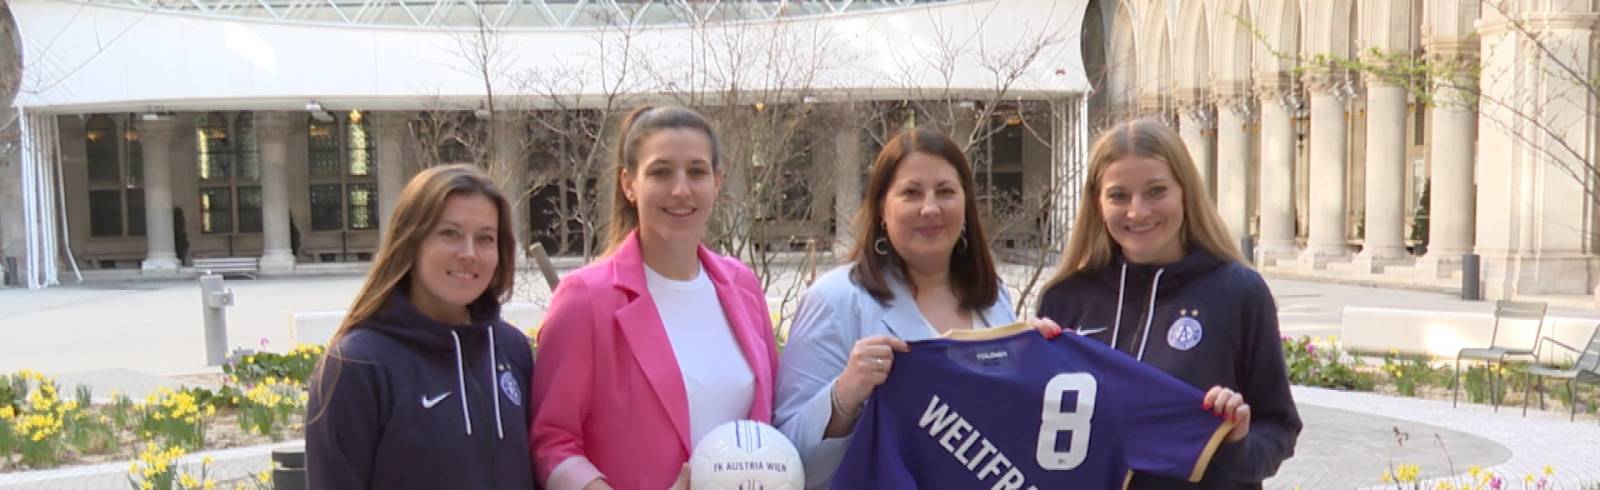 Frauenpower beim Fußball zum Frauentag